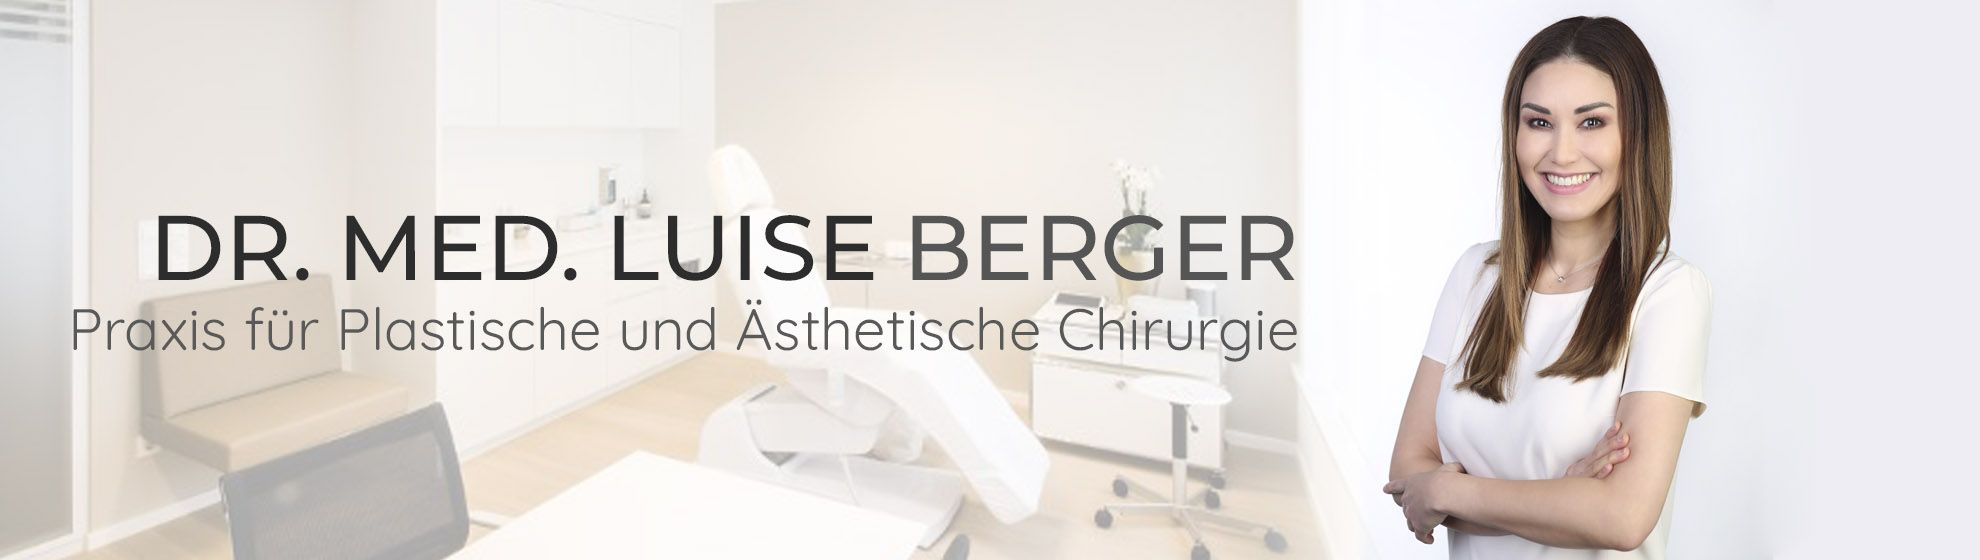 Dr. med. Luise Berger